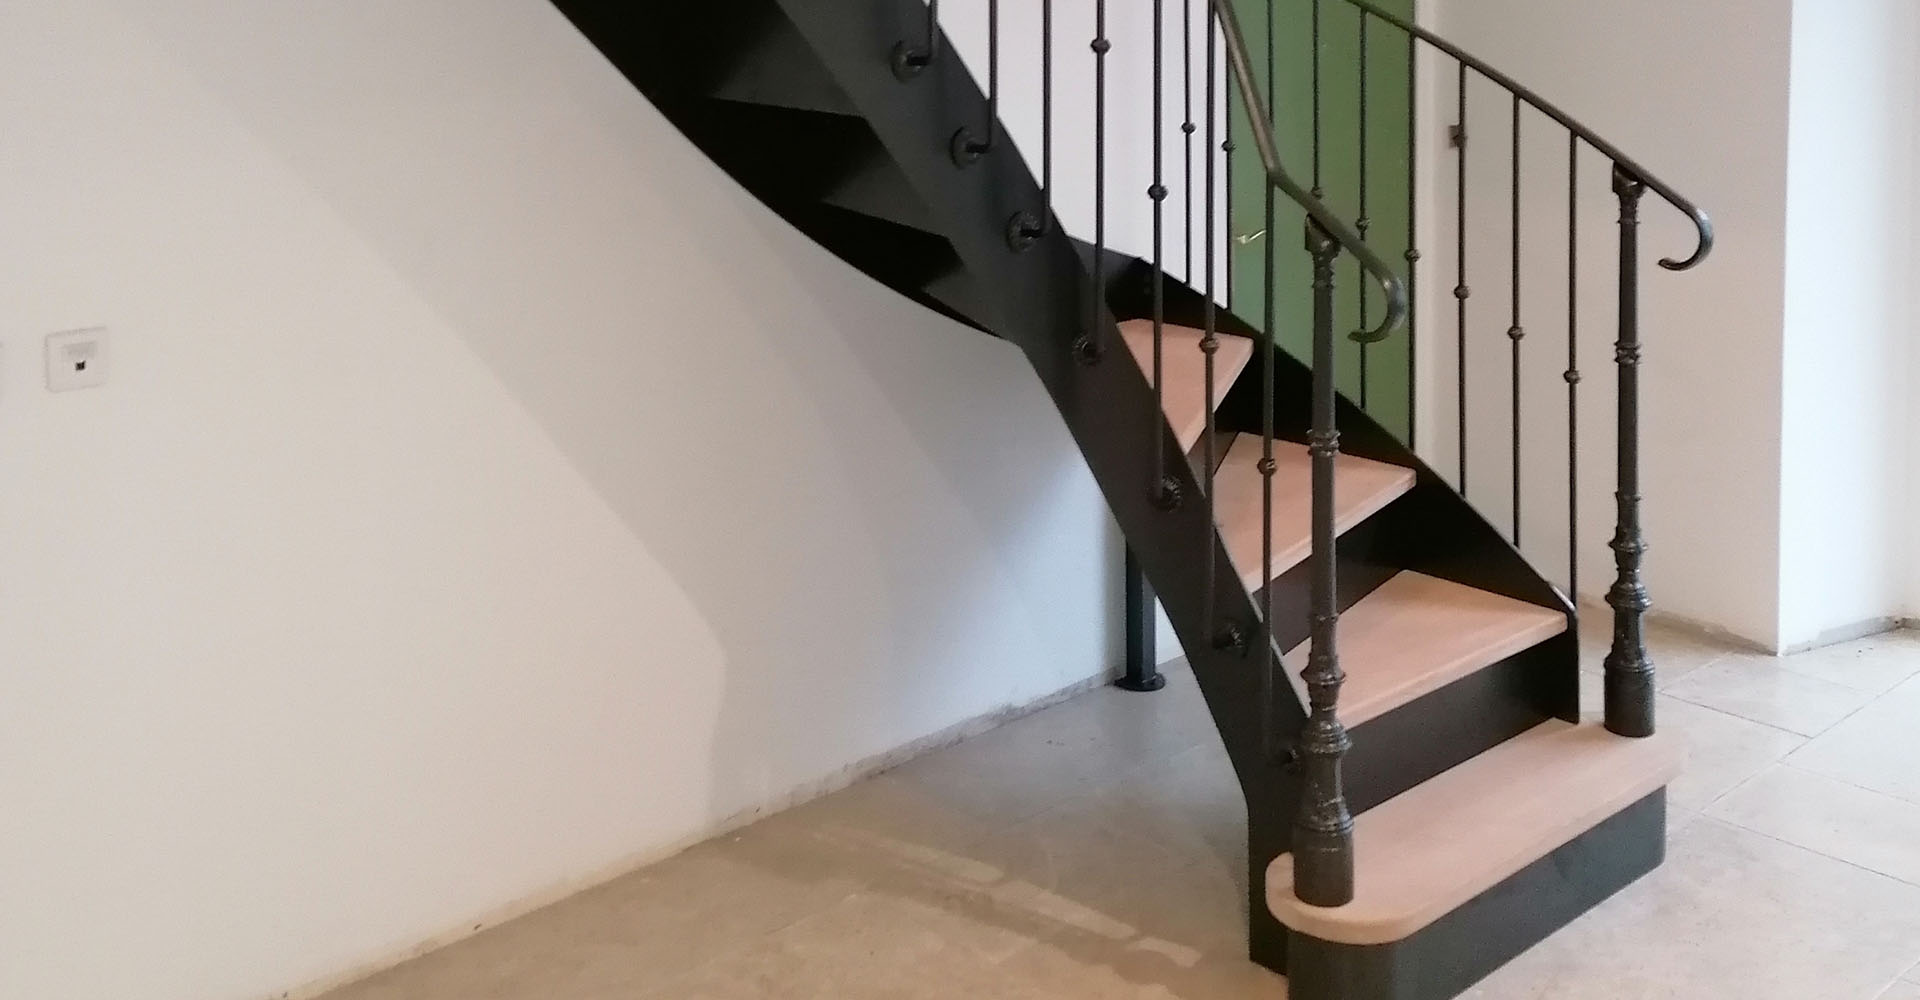 Escalier métallique